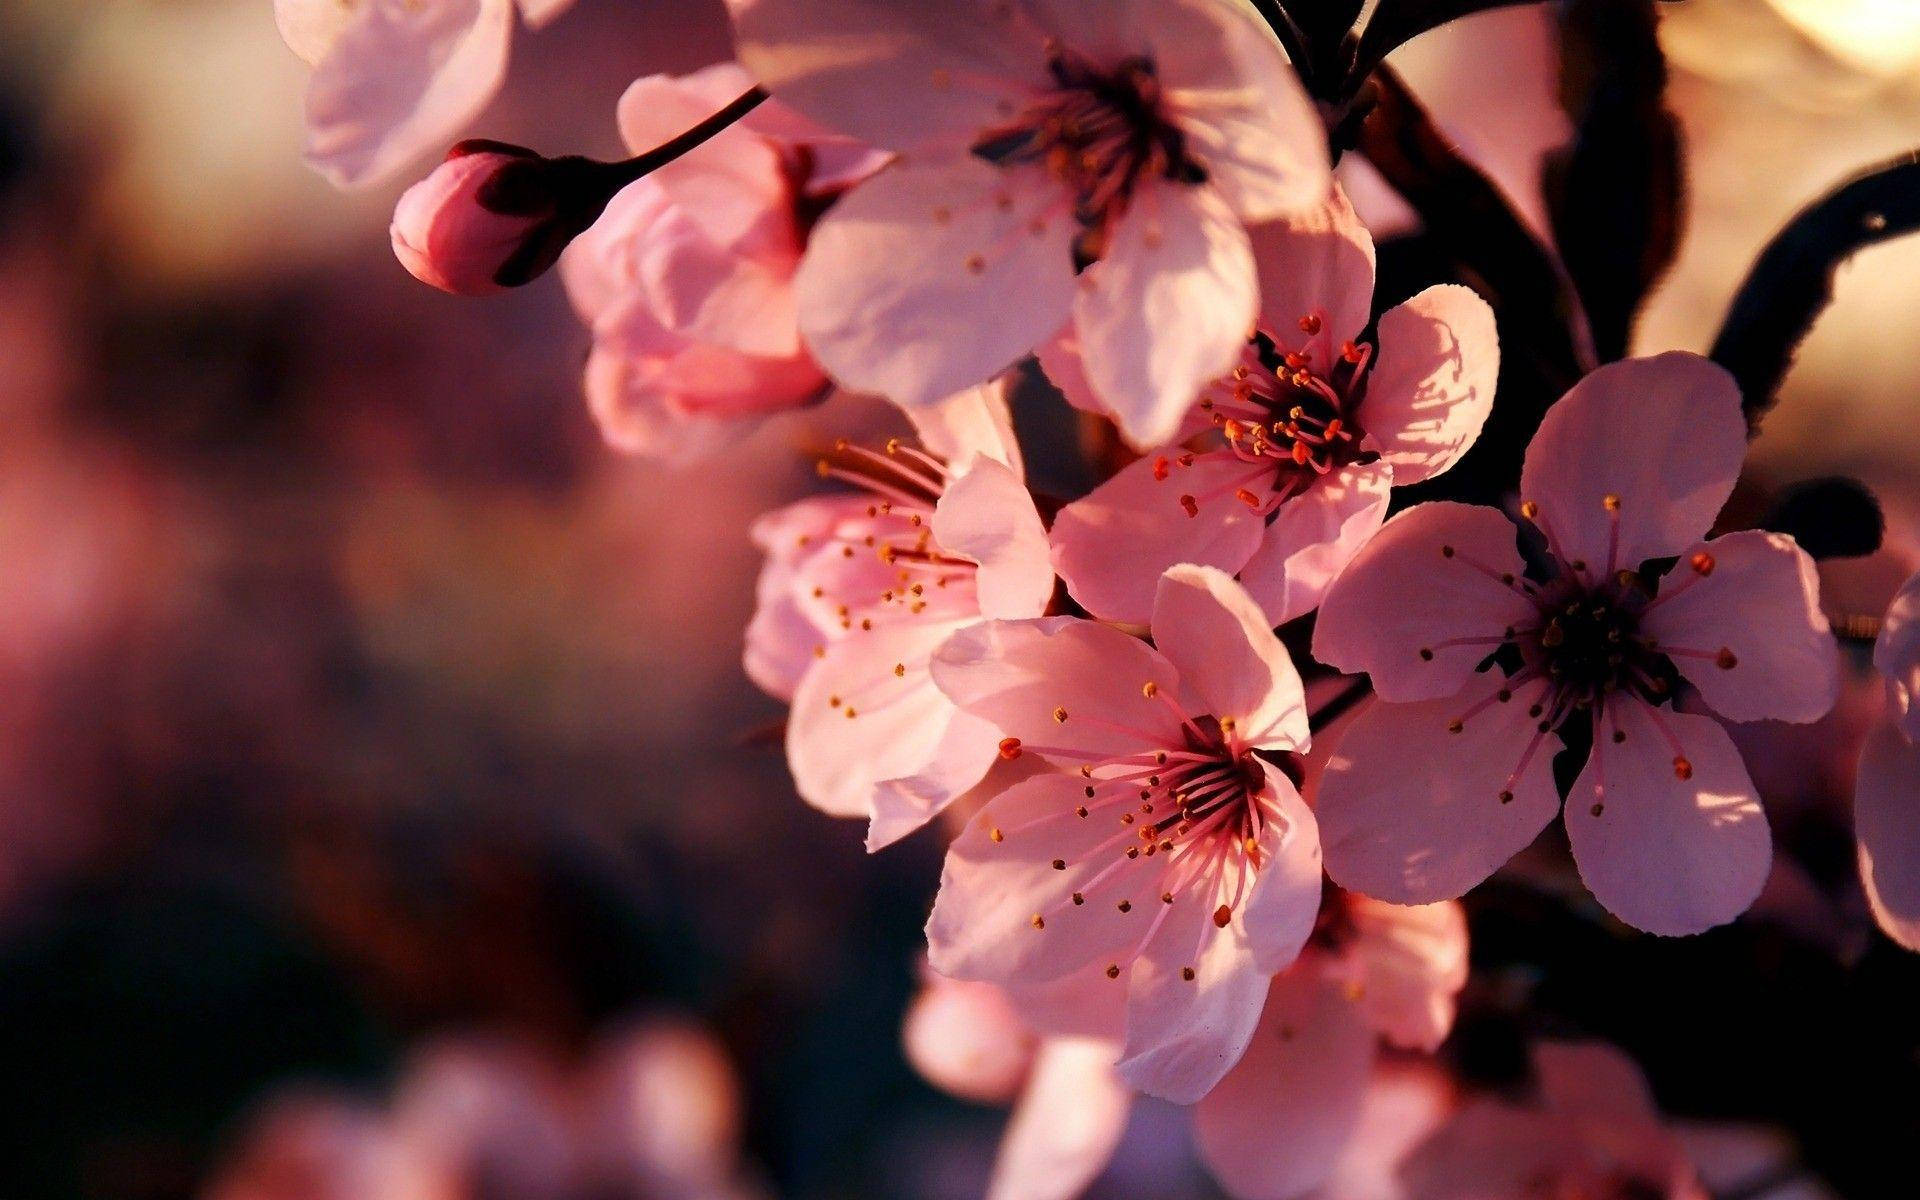 Hoa anh đào hồng được xem là một trong những biểu tượng về tình yêu và sự sống động. Hình nền hoa anh đào hồng này sẽ giúp cho bạn có một trải nghiệm nghệ thuật đầy cảm hứng trên thiết bị của mình.